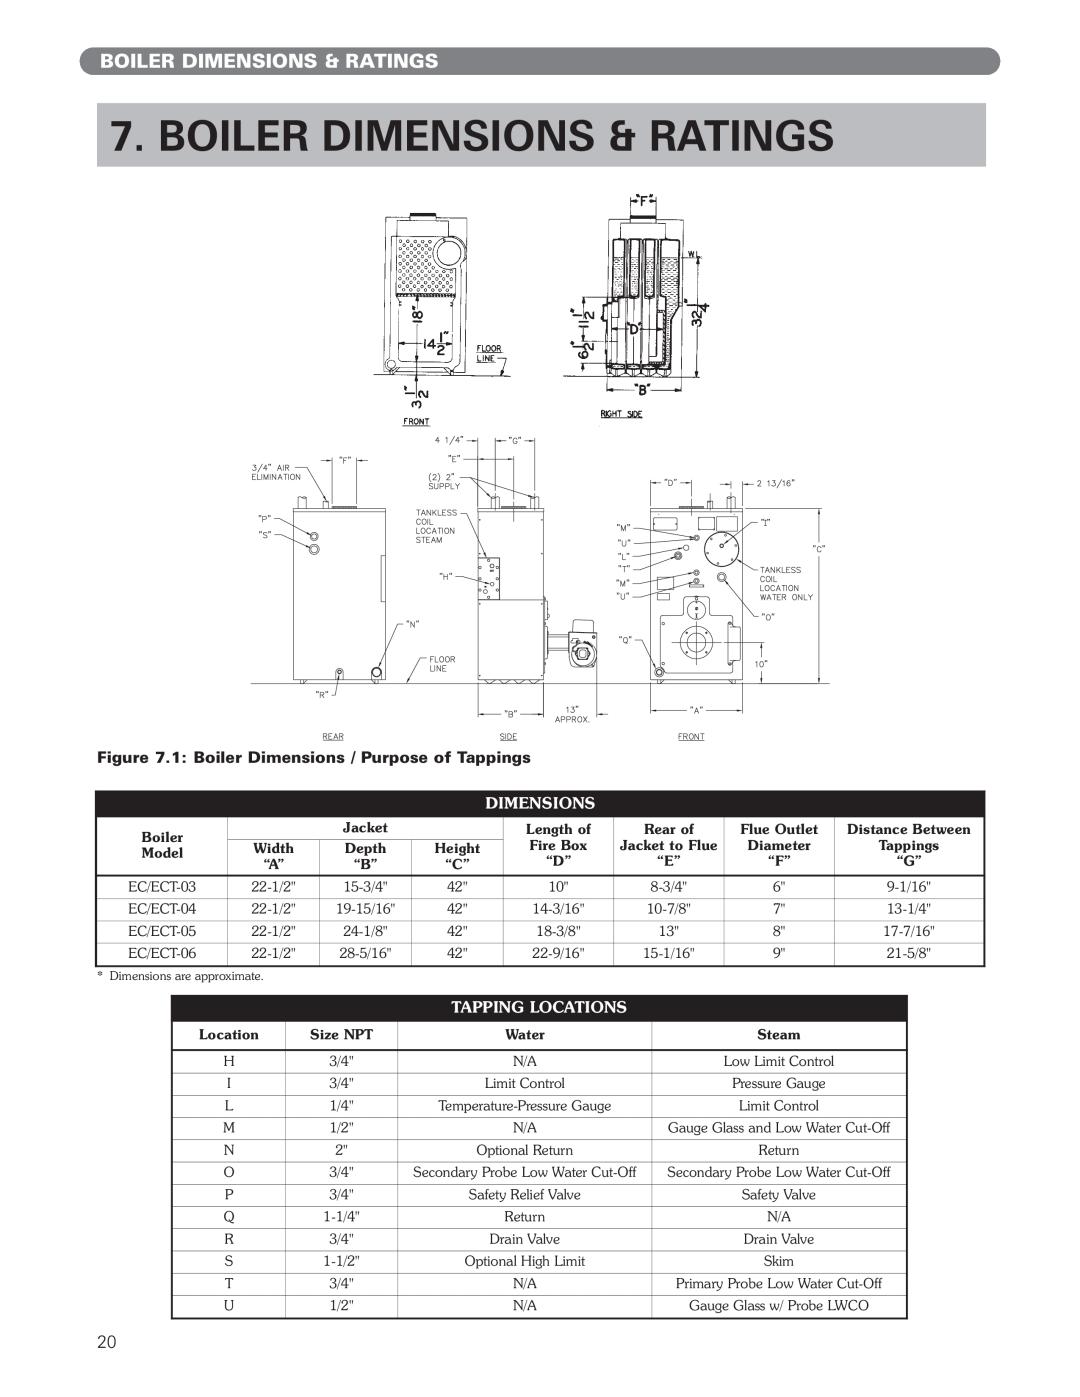 PB Heat ECT Series, EC Series manual Boiler Dimensions & Ratings, Tapping Locations 